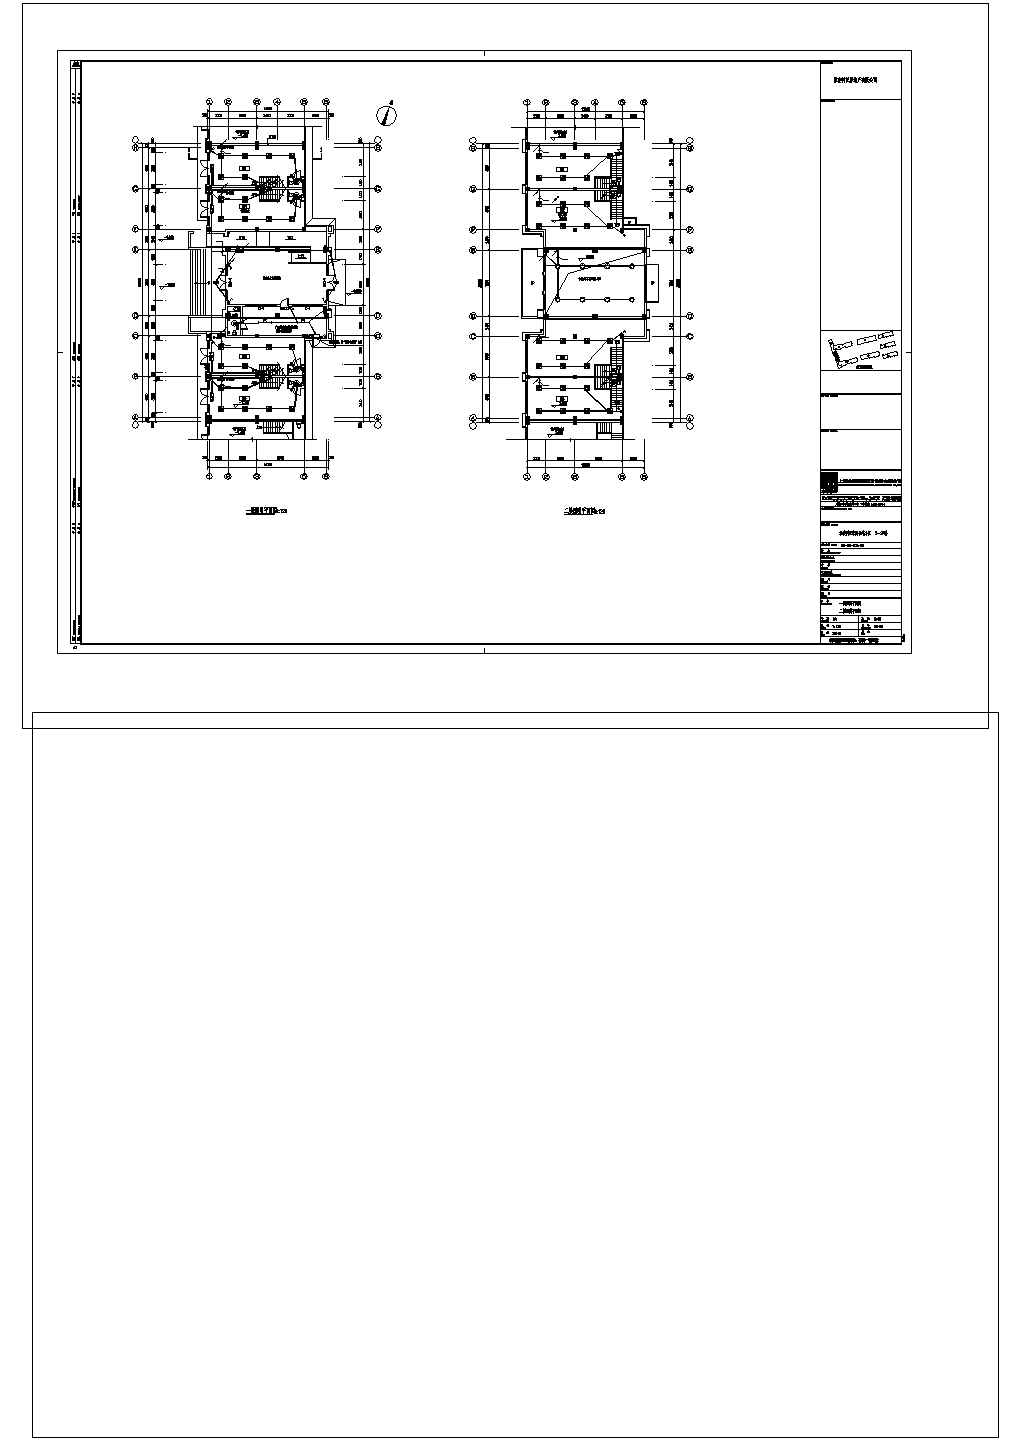 某高校职工生活住宅房电气完整设计施工CAD图纸